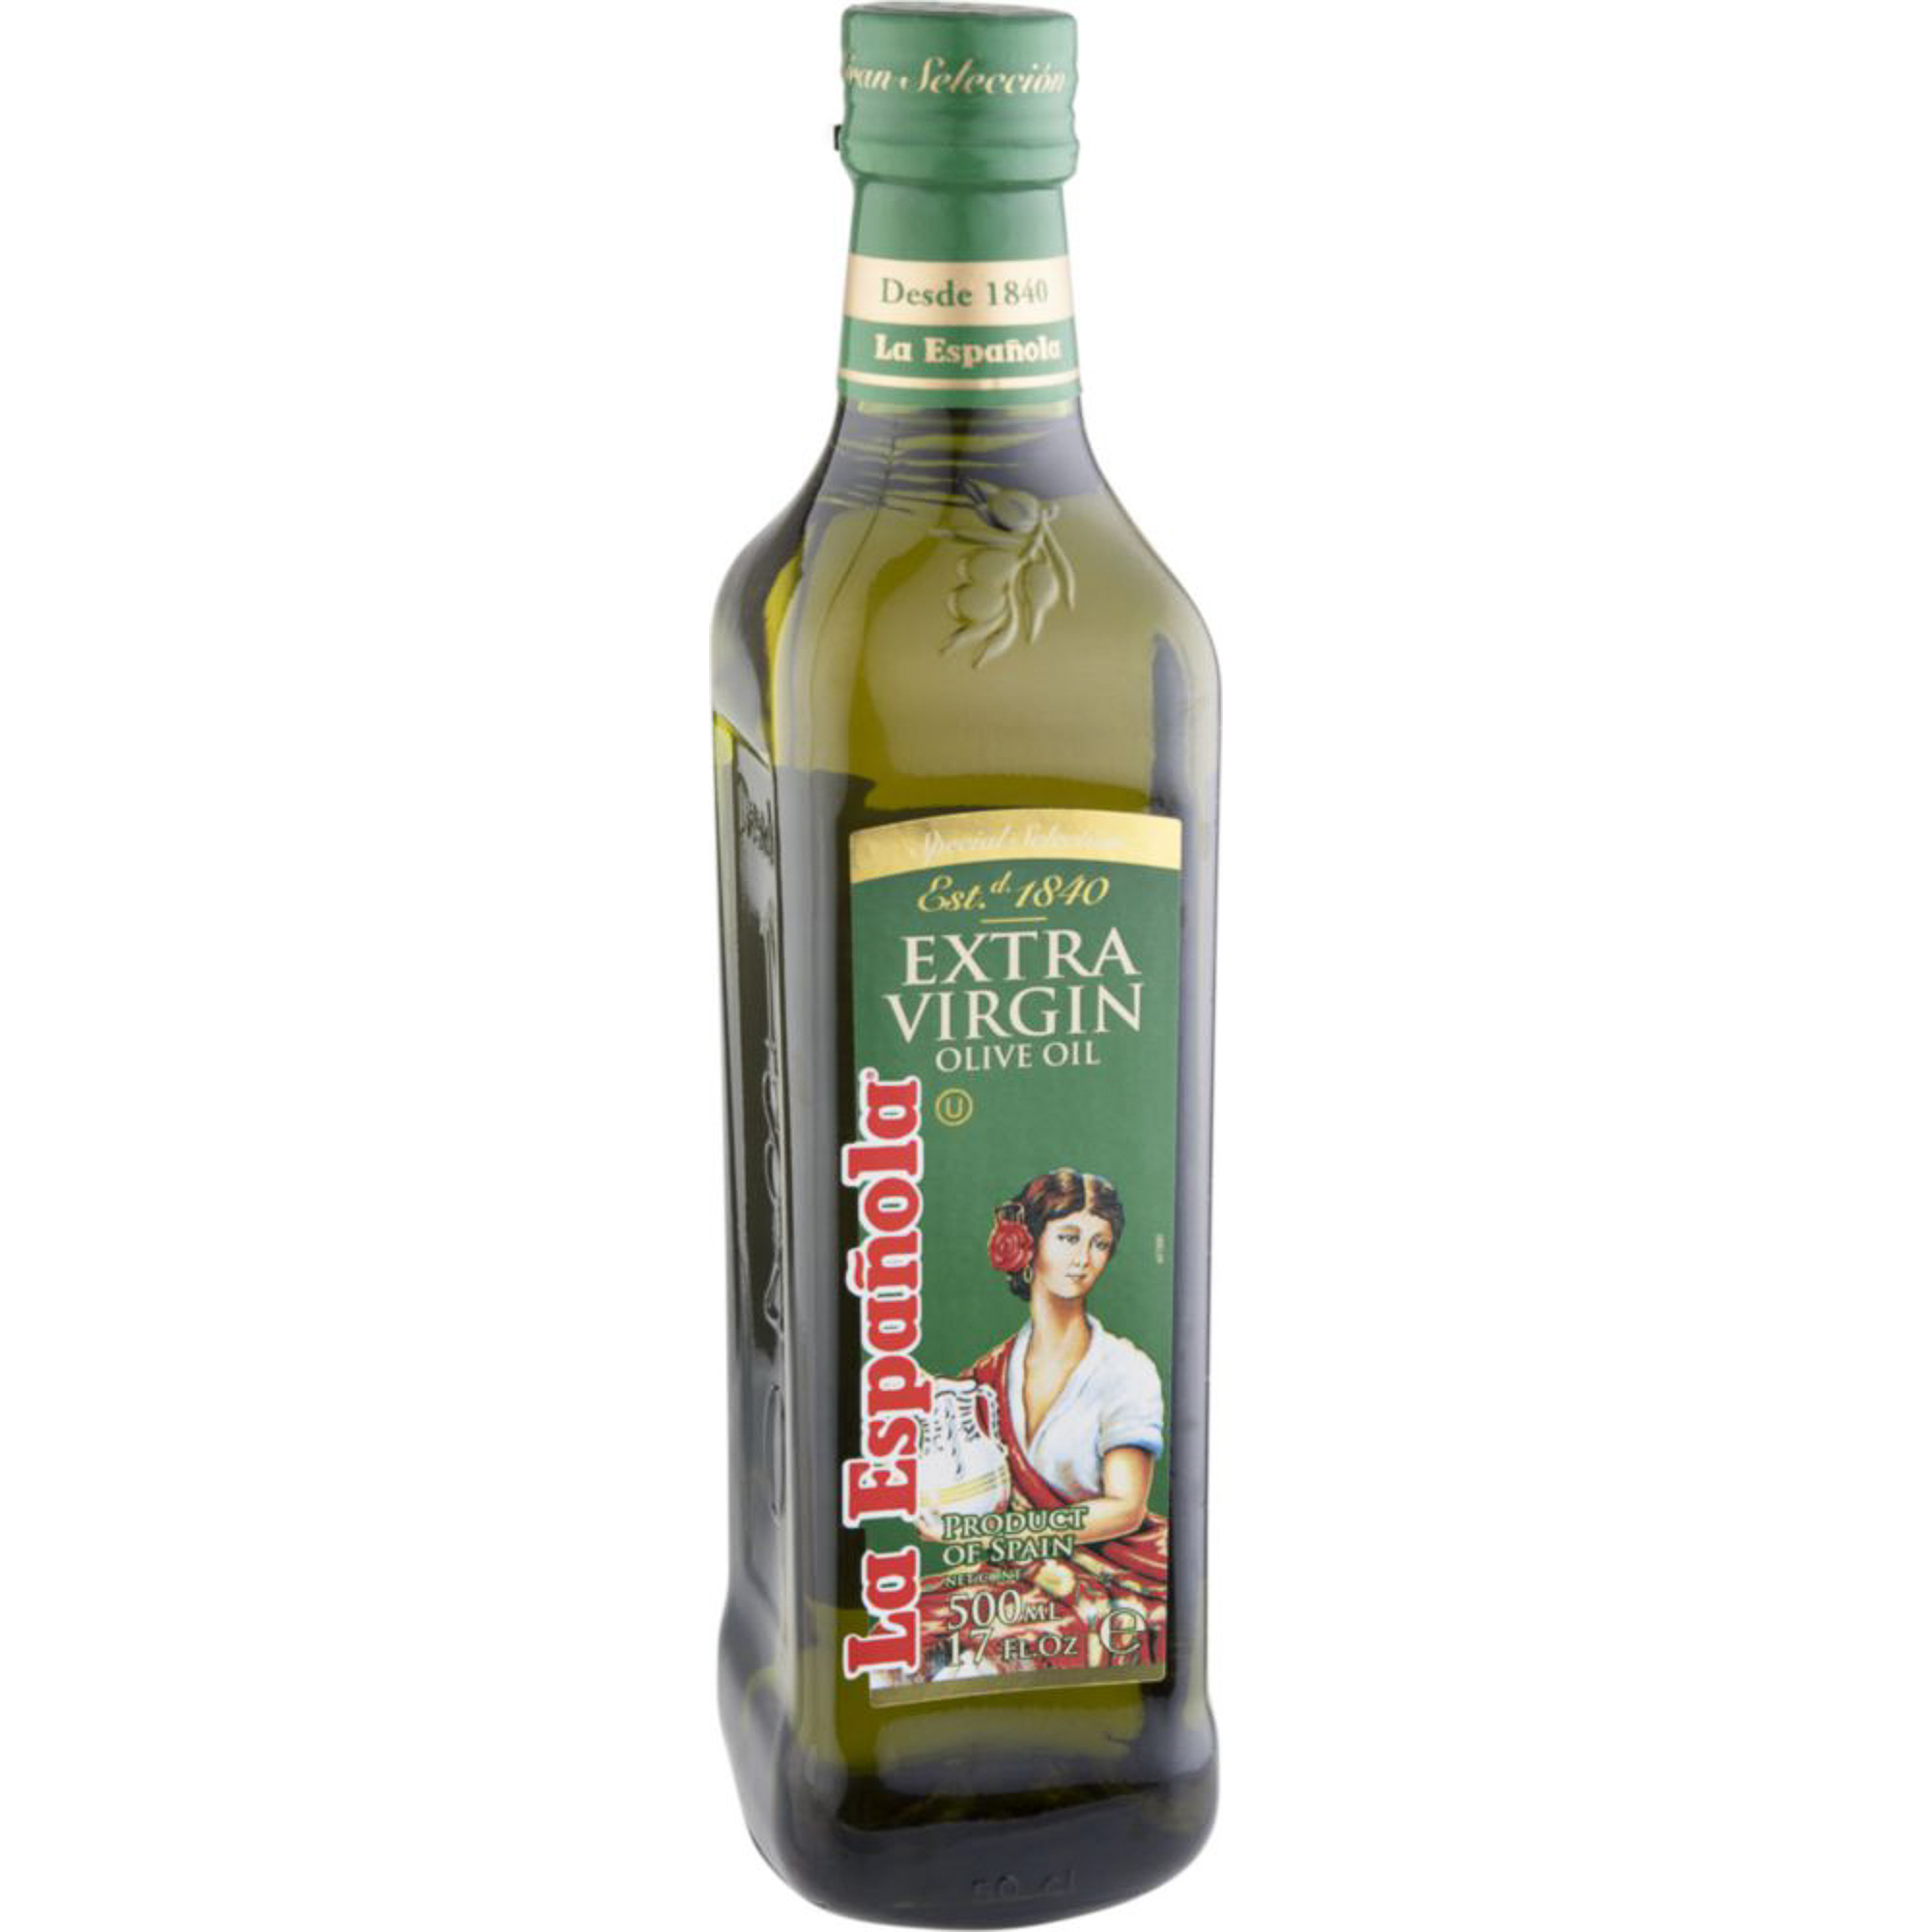 Масло оливковое espanola. Масло оливковое ла Эспаньола. La espanola масло Extra Virgin. La espanola масло оливковое Extra Virgin. Масло оливковое la espanola 500.